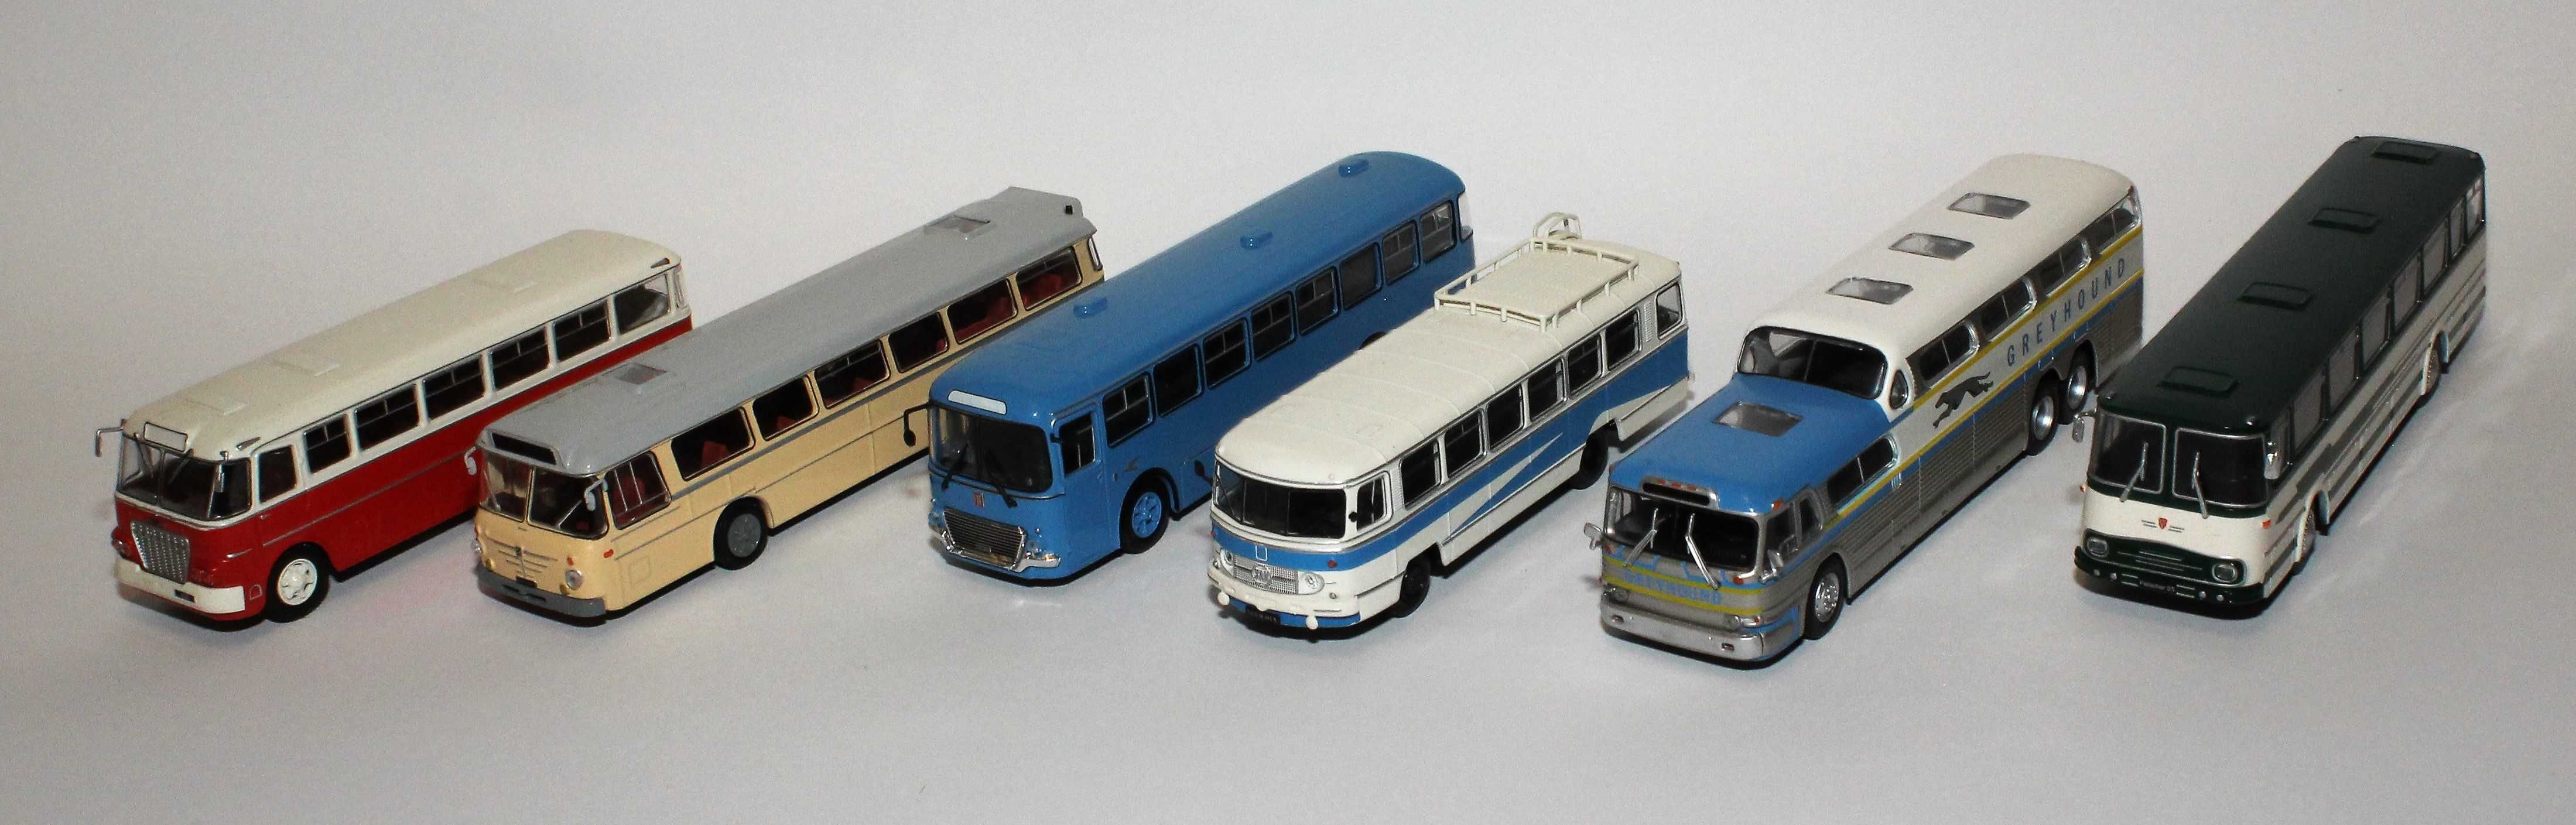 Kultowe autobusy Prl-u. Kolekcja DeAgostini.